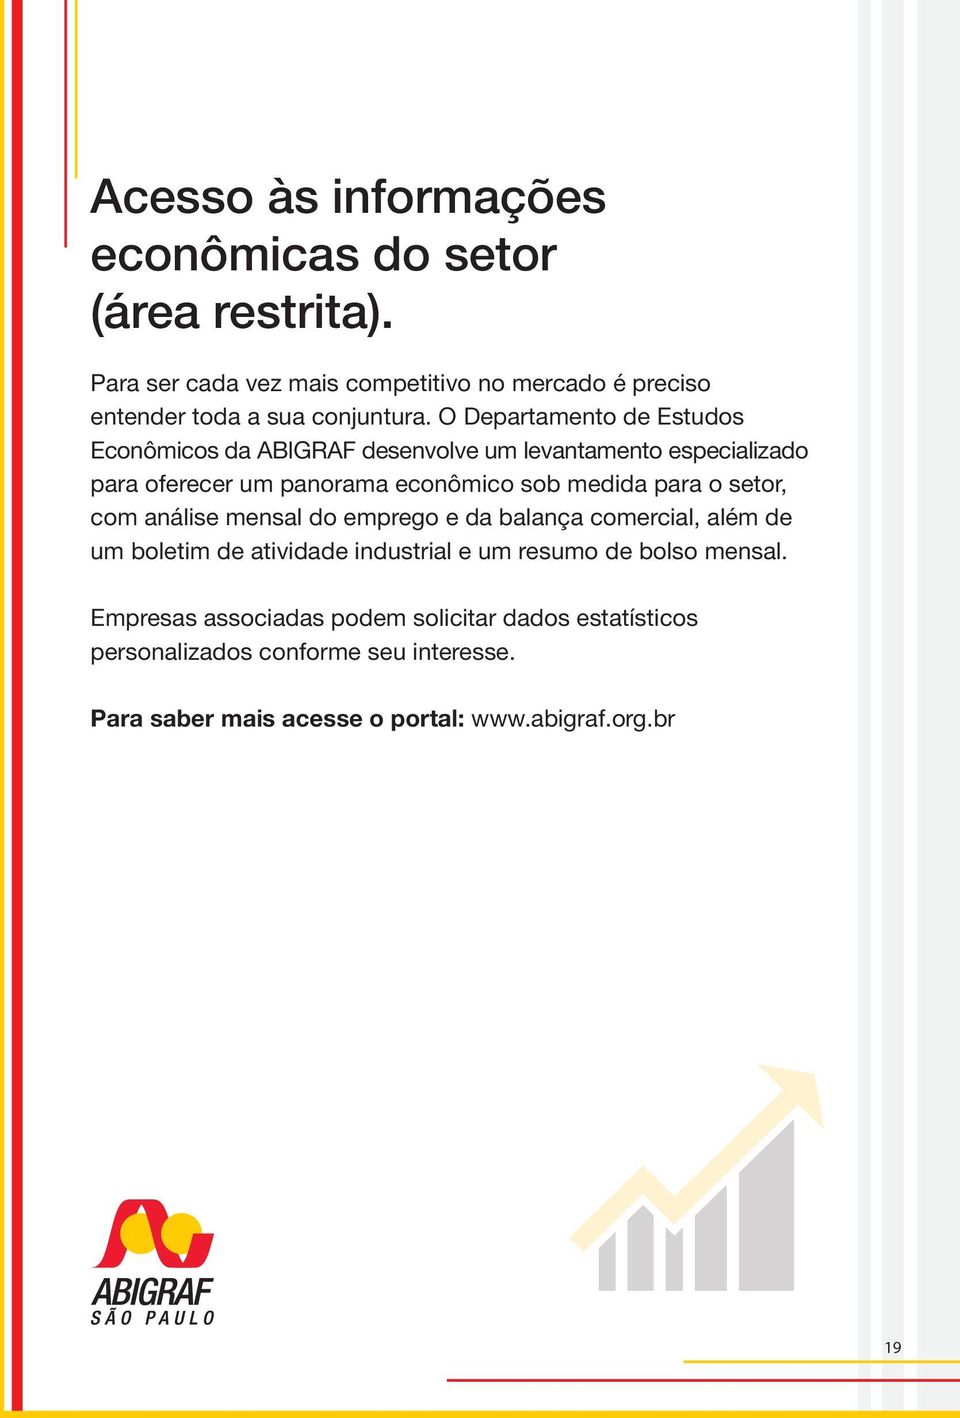 O Departamento de Estudos Econômicos da ABIGRAF desenvolve um levantamento especializado para oferecer um panorama econômico sob medida para o